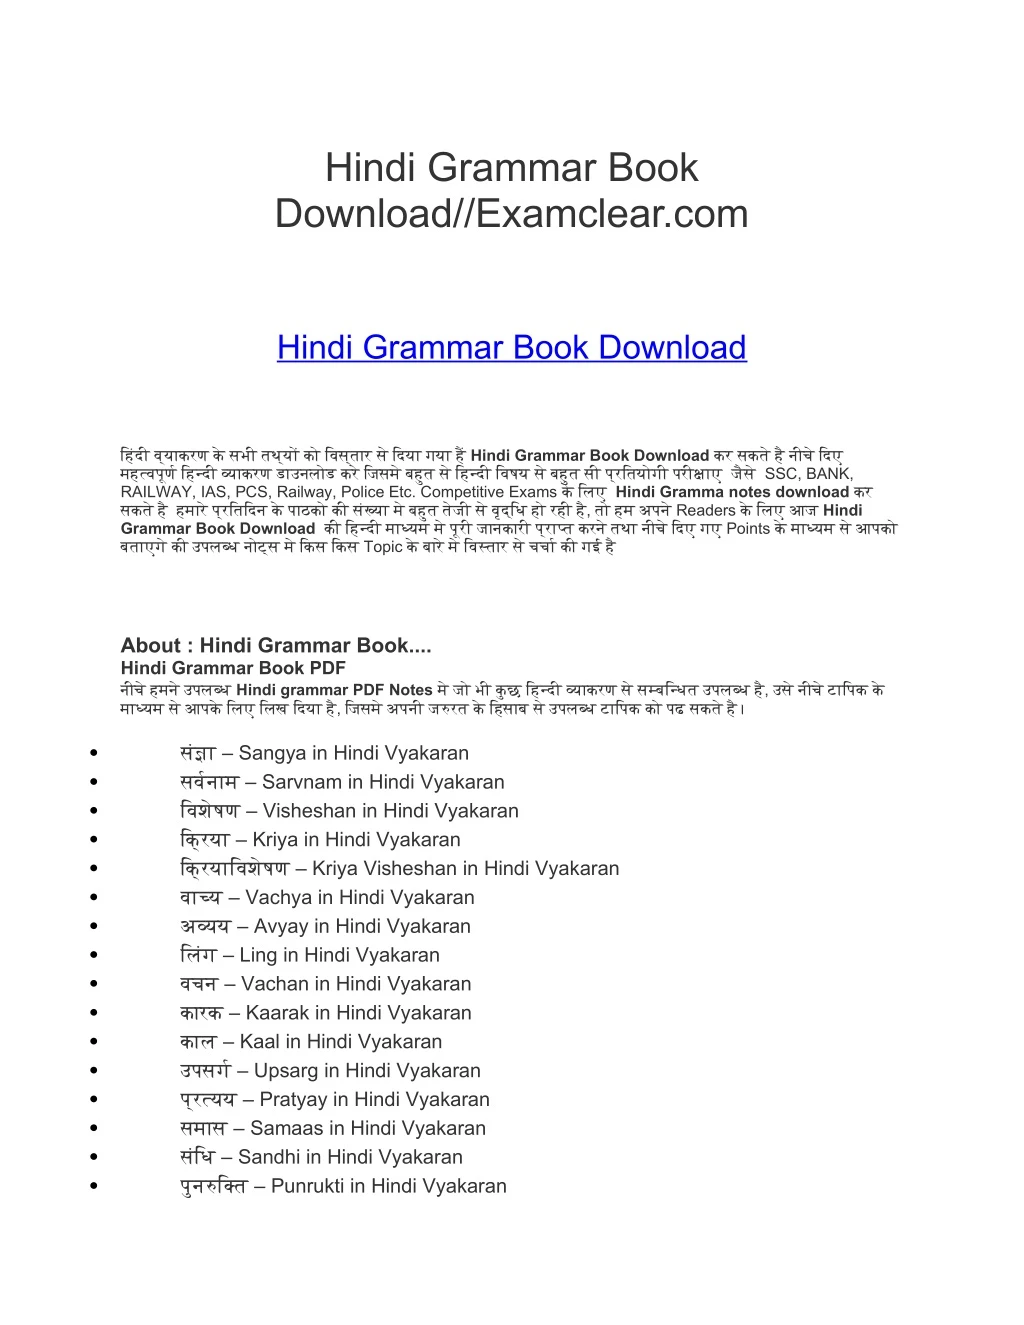 hindi grammar book download examclear com